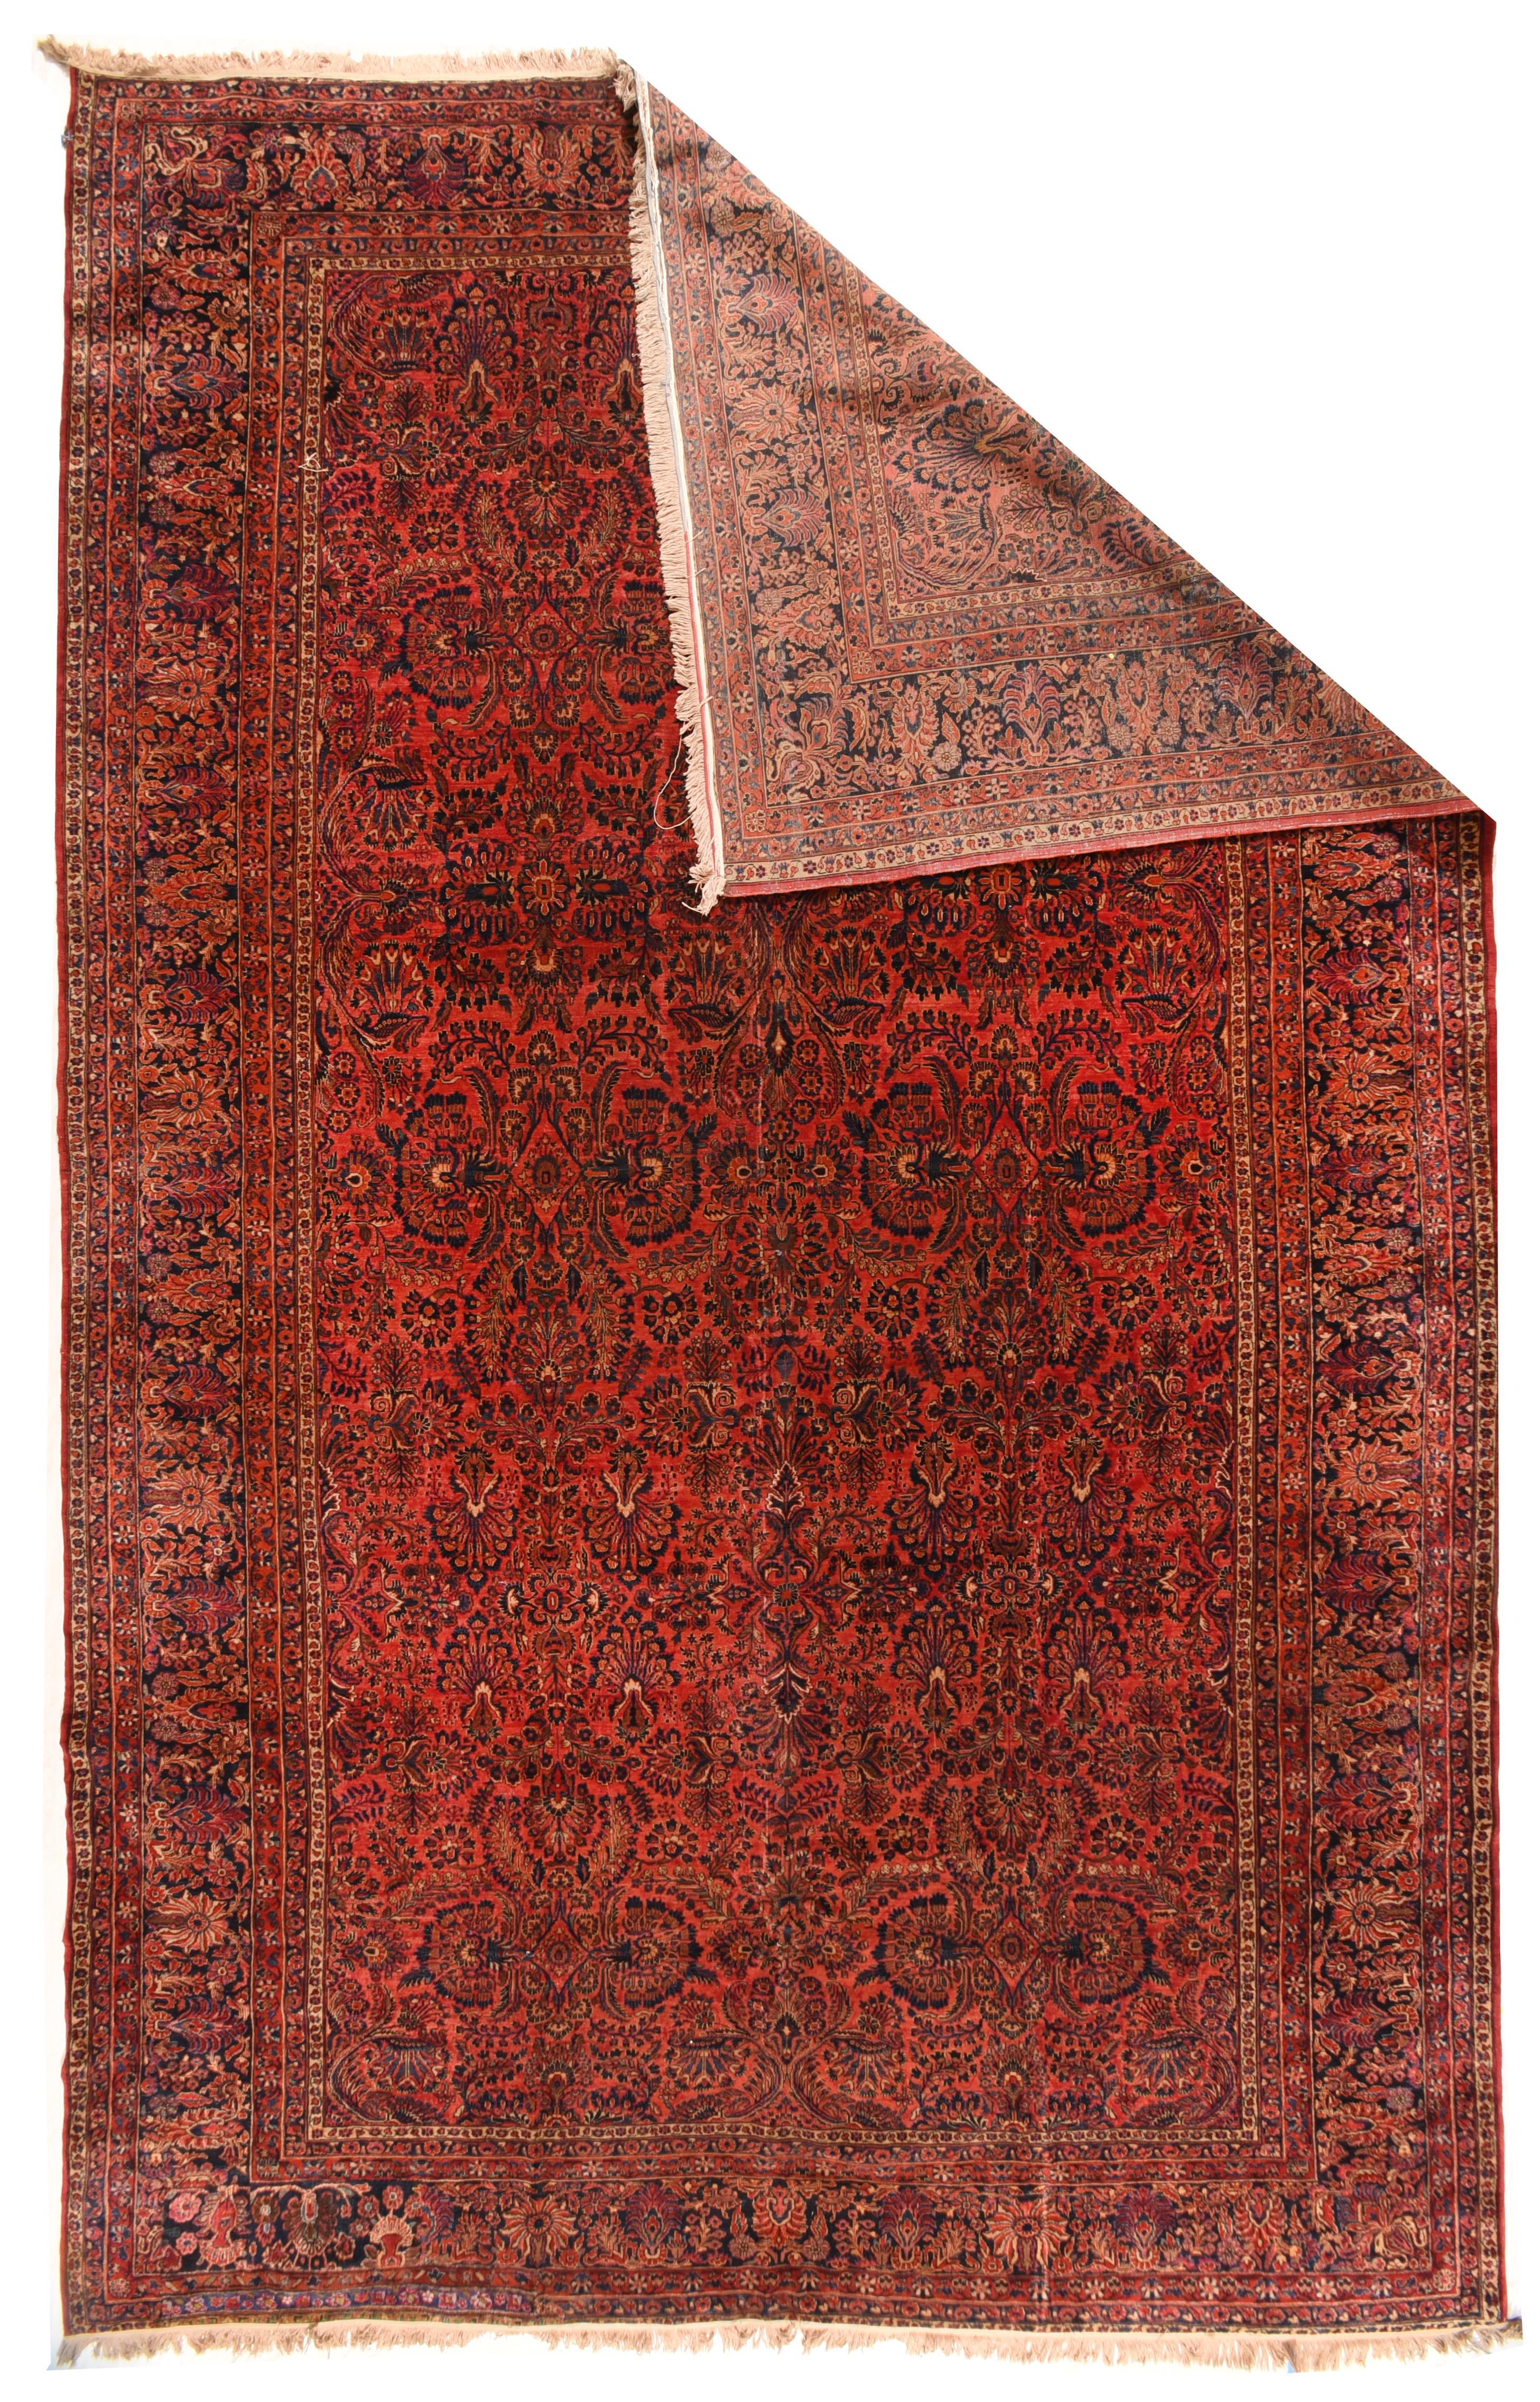 Sarouk rug measures 12'0'' x 18'6''.